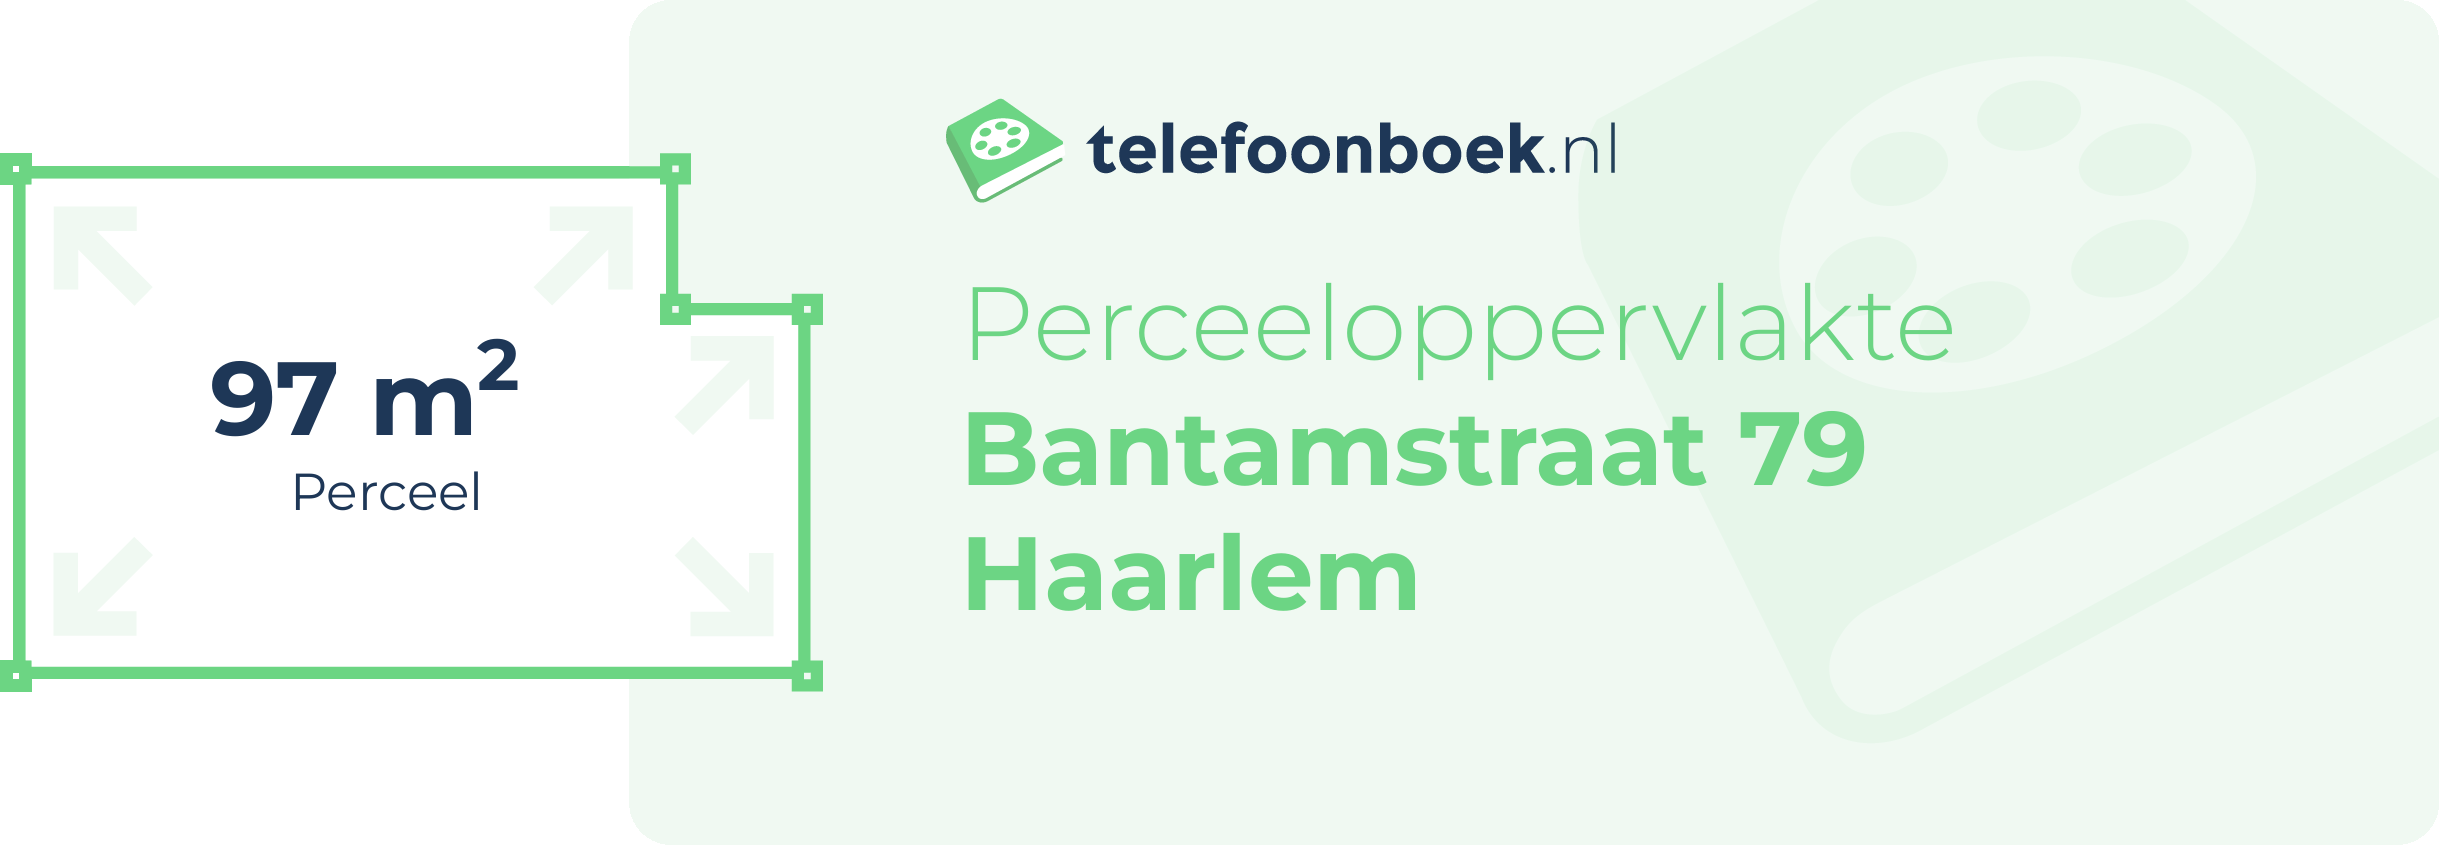 Perceeloppervlakte Bantamstraat 79 Haarlem